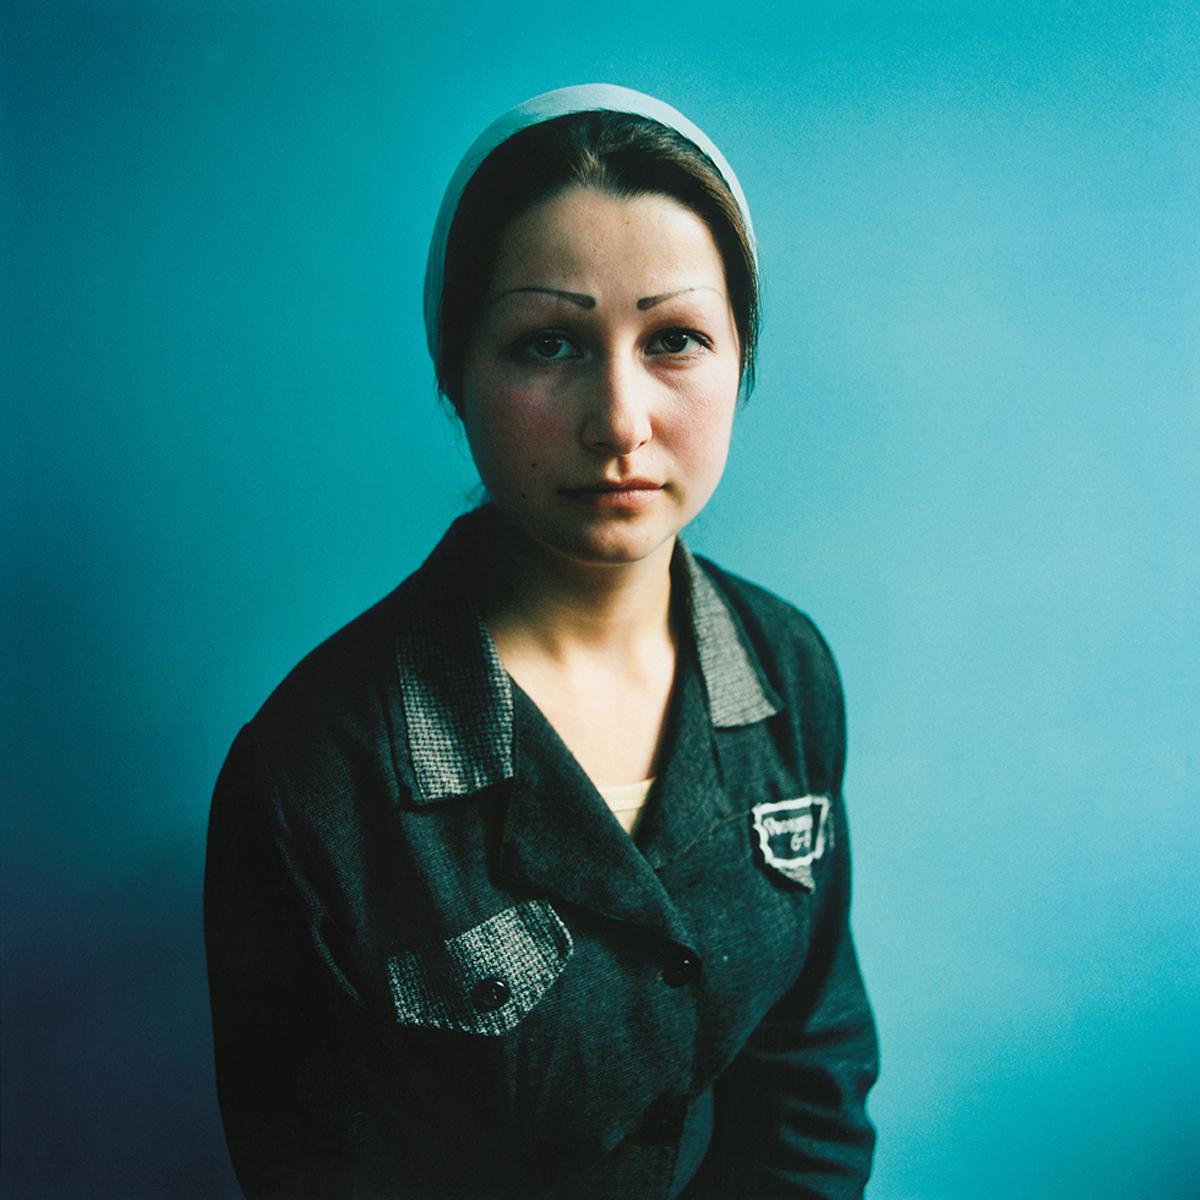 Michal Chelbin Portrait Photograph - Sveta (Sentenced for Murder): Women’s Prison